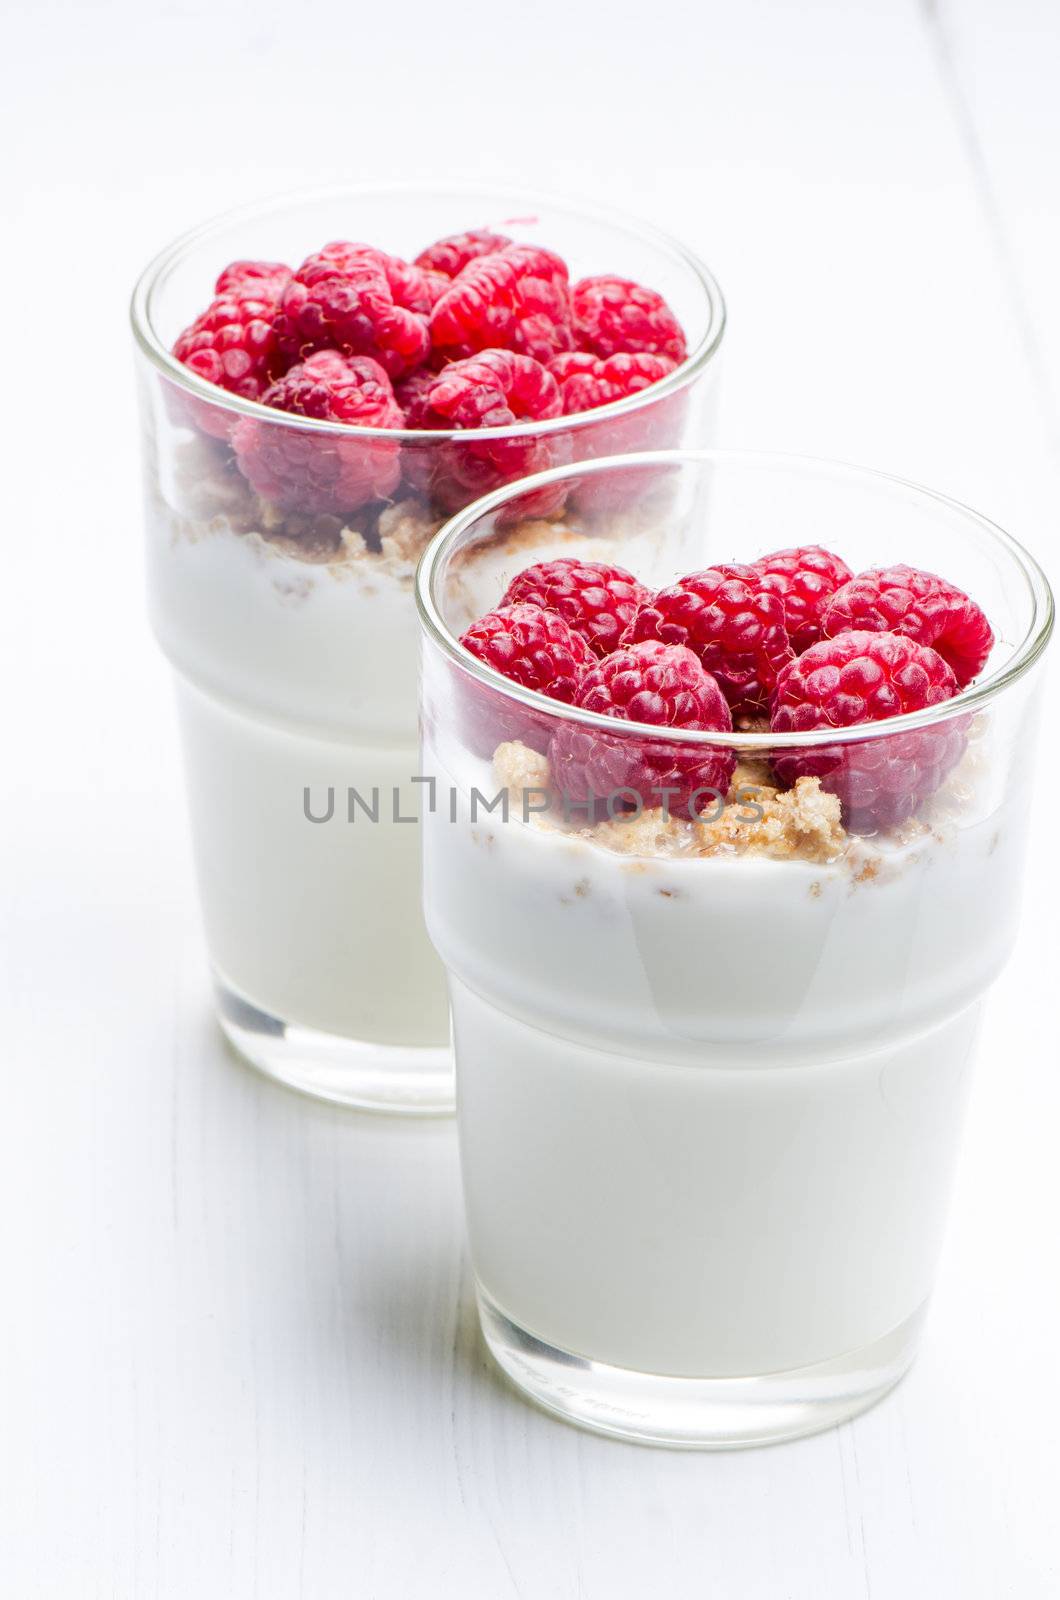 Yogurt with raspberries in a glass